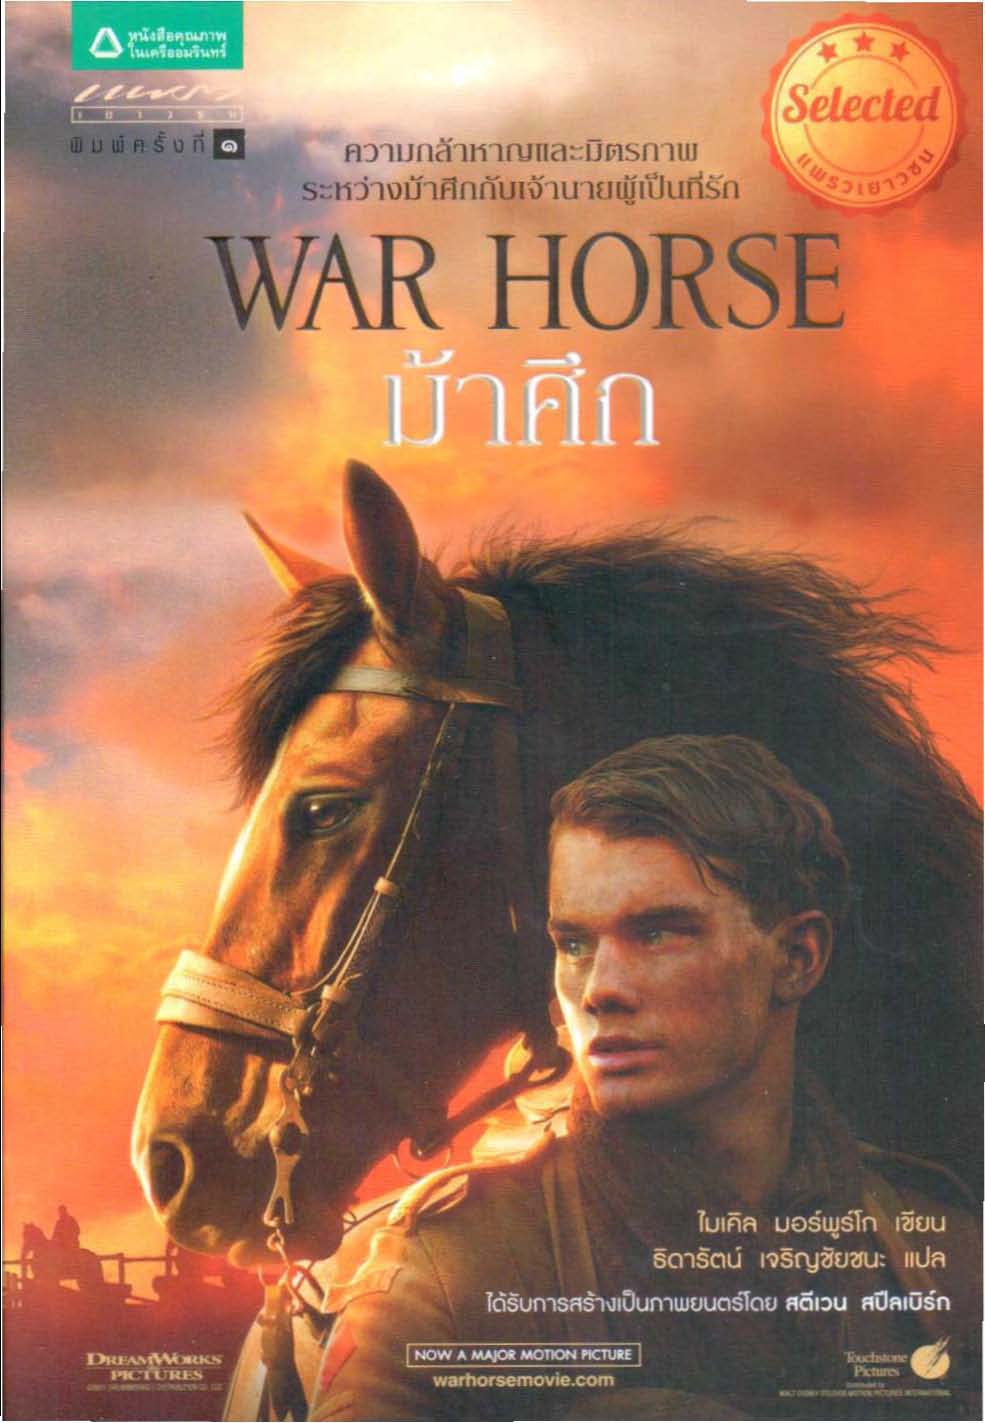 ม้าศึก (War Horse)